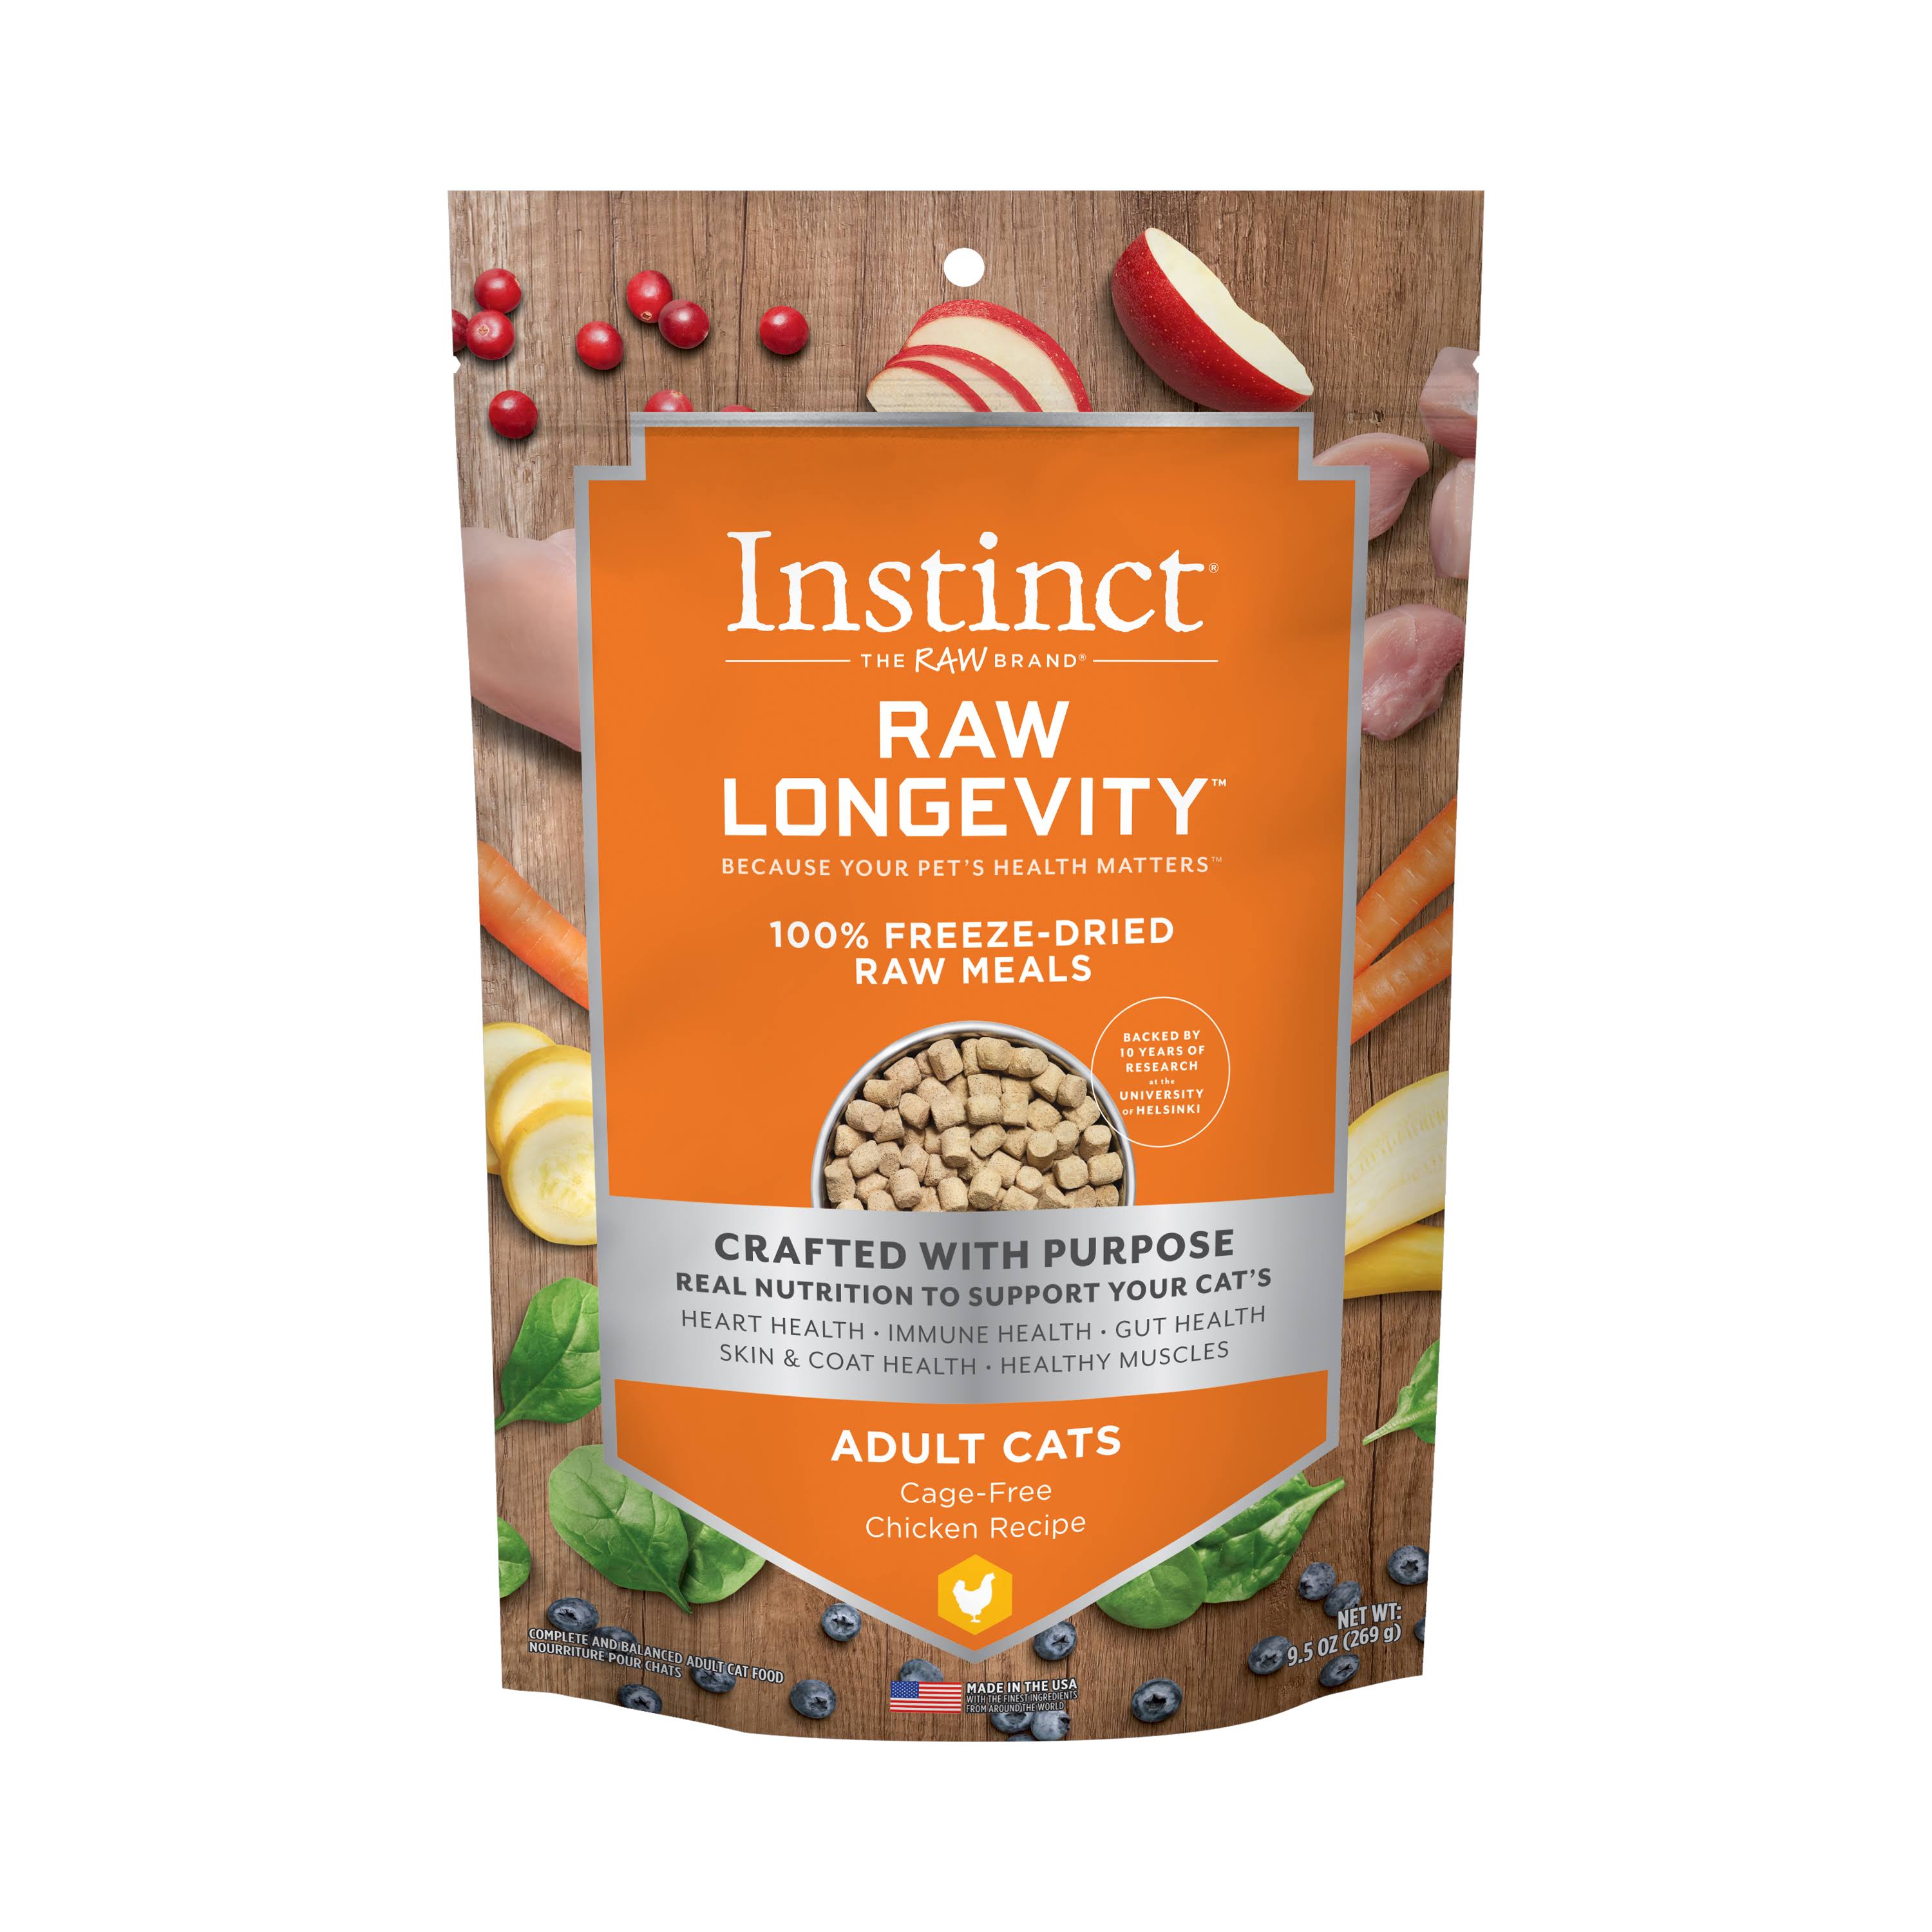 Instinct Raw Longevity Chicken Freeze-Dried Cat Food, 9.5-oz